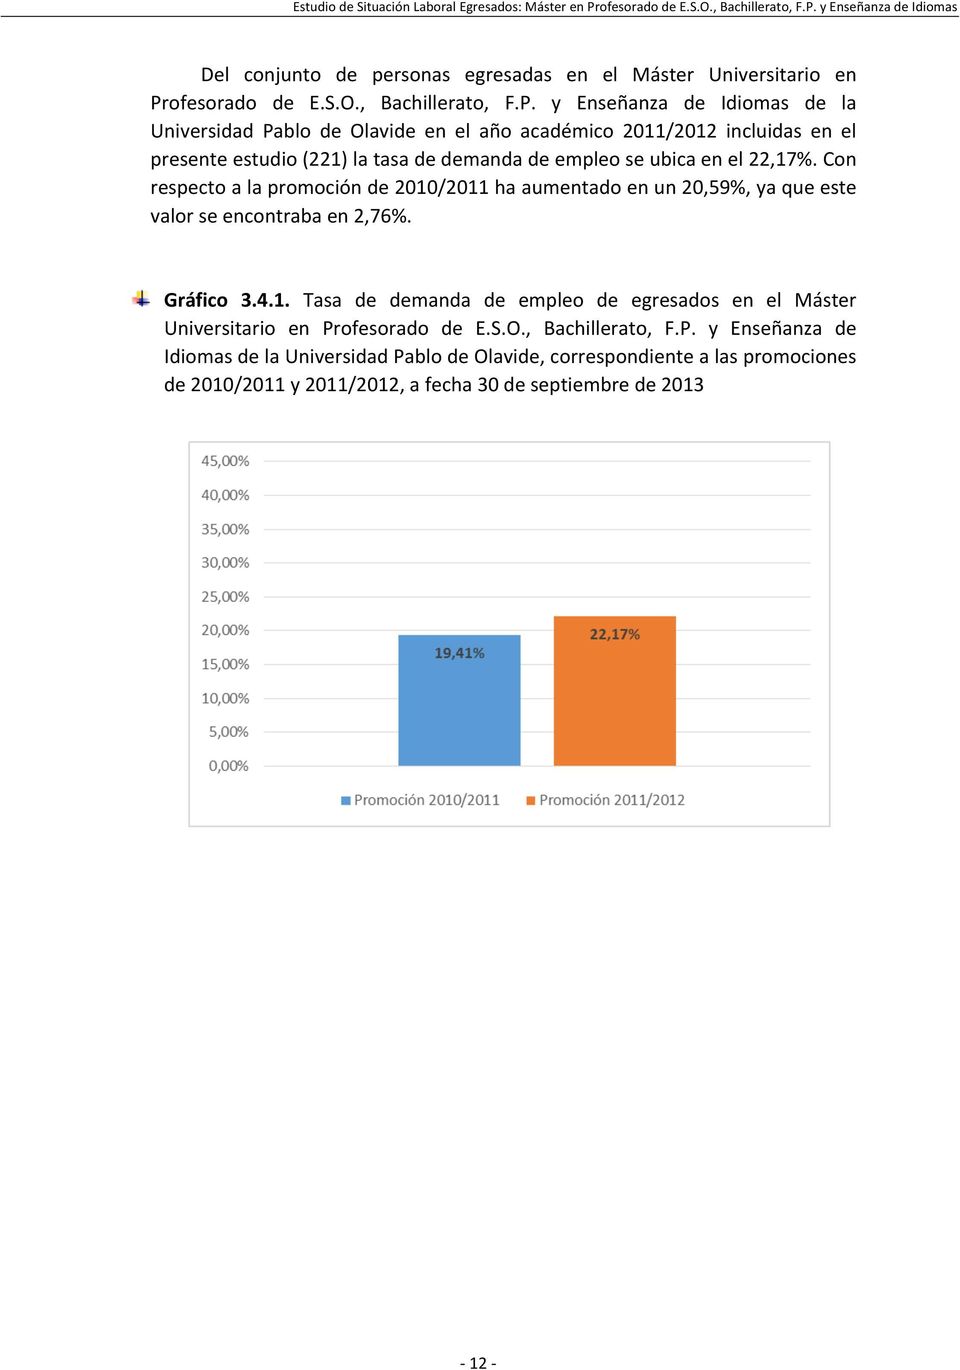 y Enseñanza de Idiomas de la Universidad Pablo de Olavide en el año académico 2011/2012 incluidas en el presente estudio (221) la tasa de demanda de empleo se ubica en